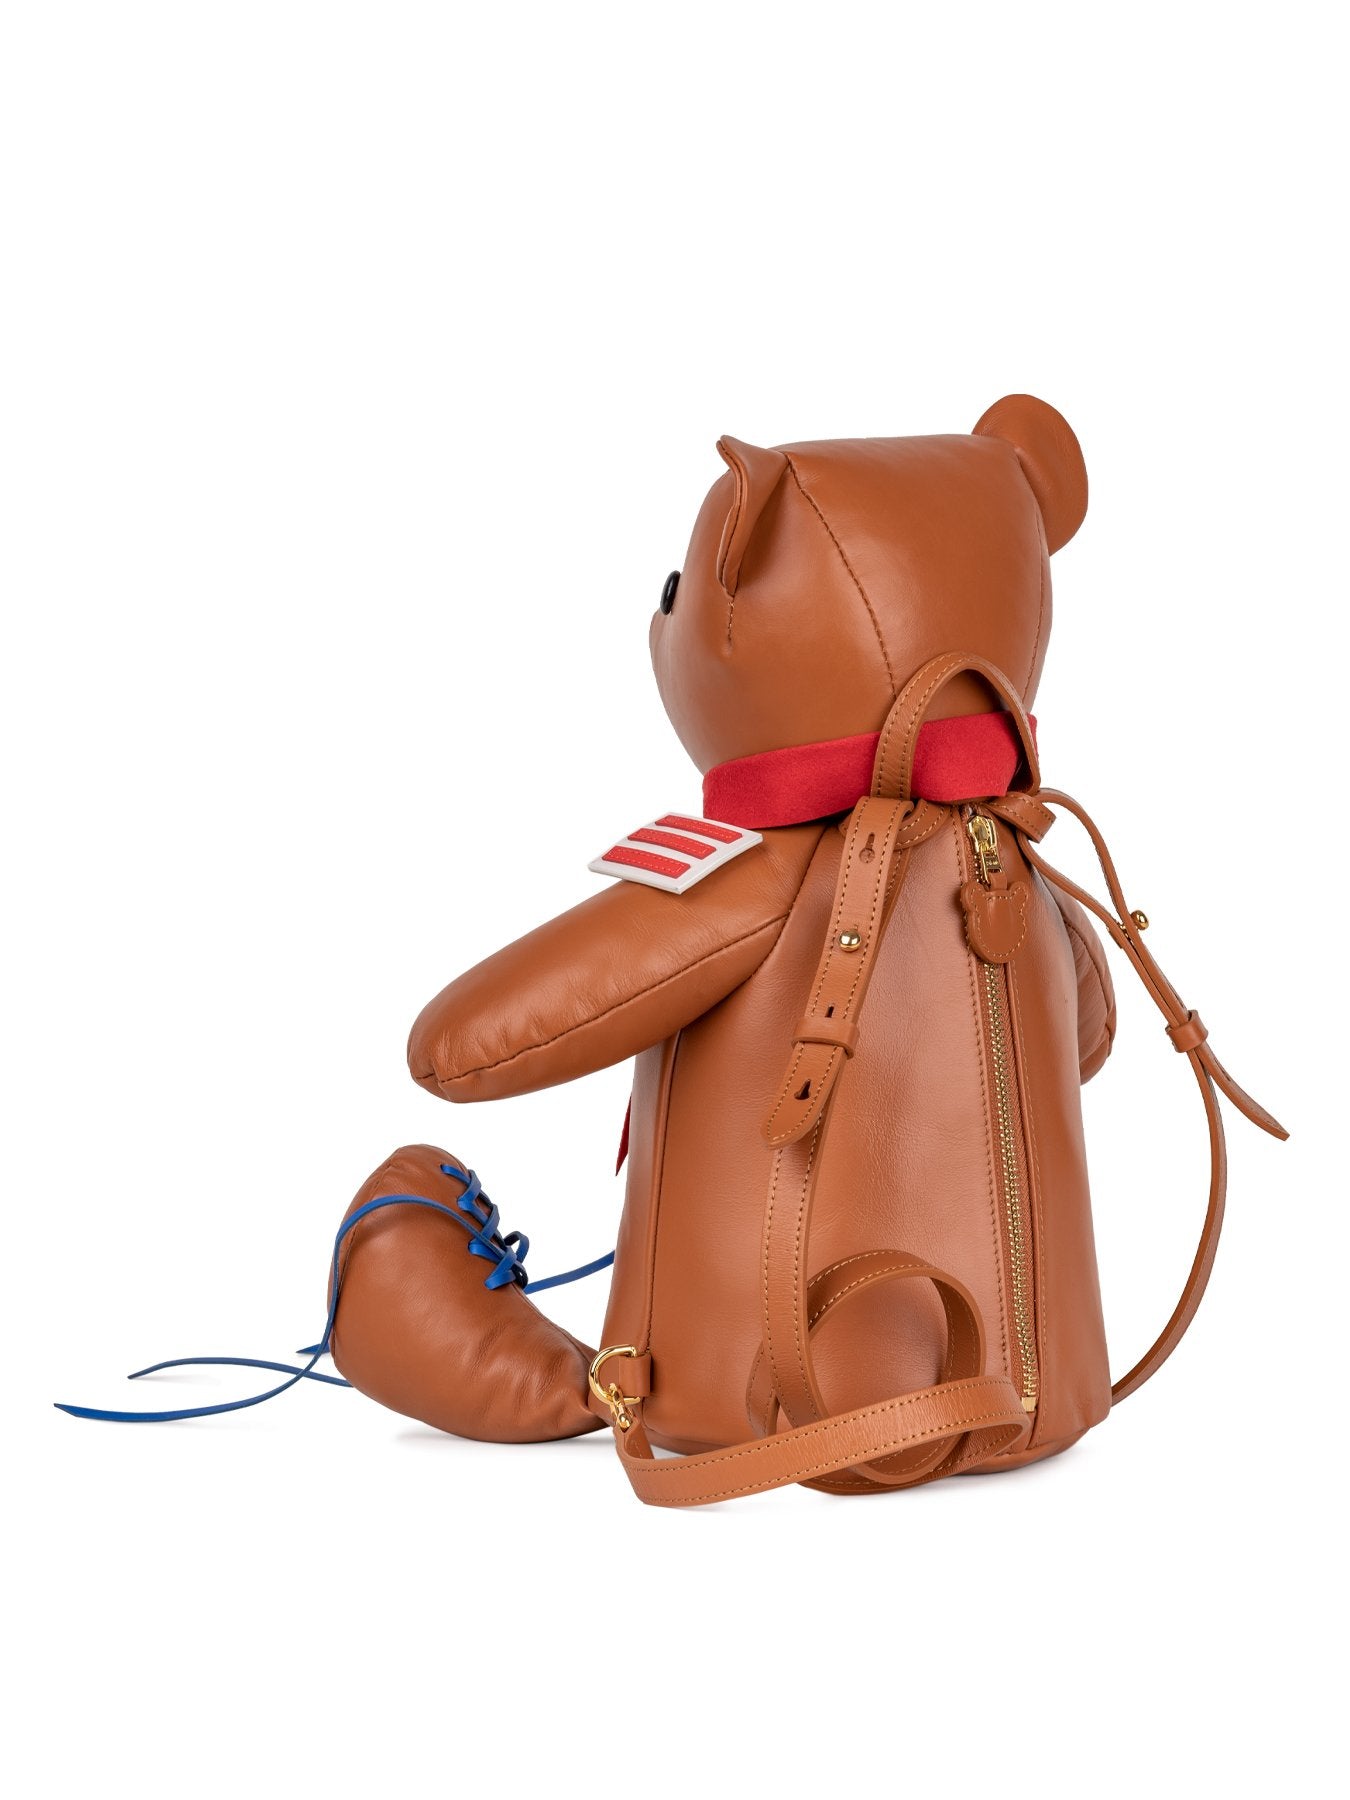 designer trendy handbag in brown color